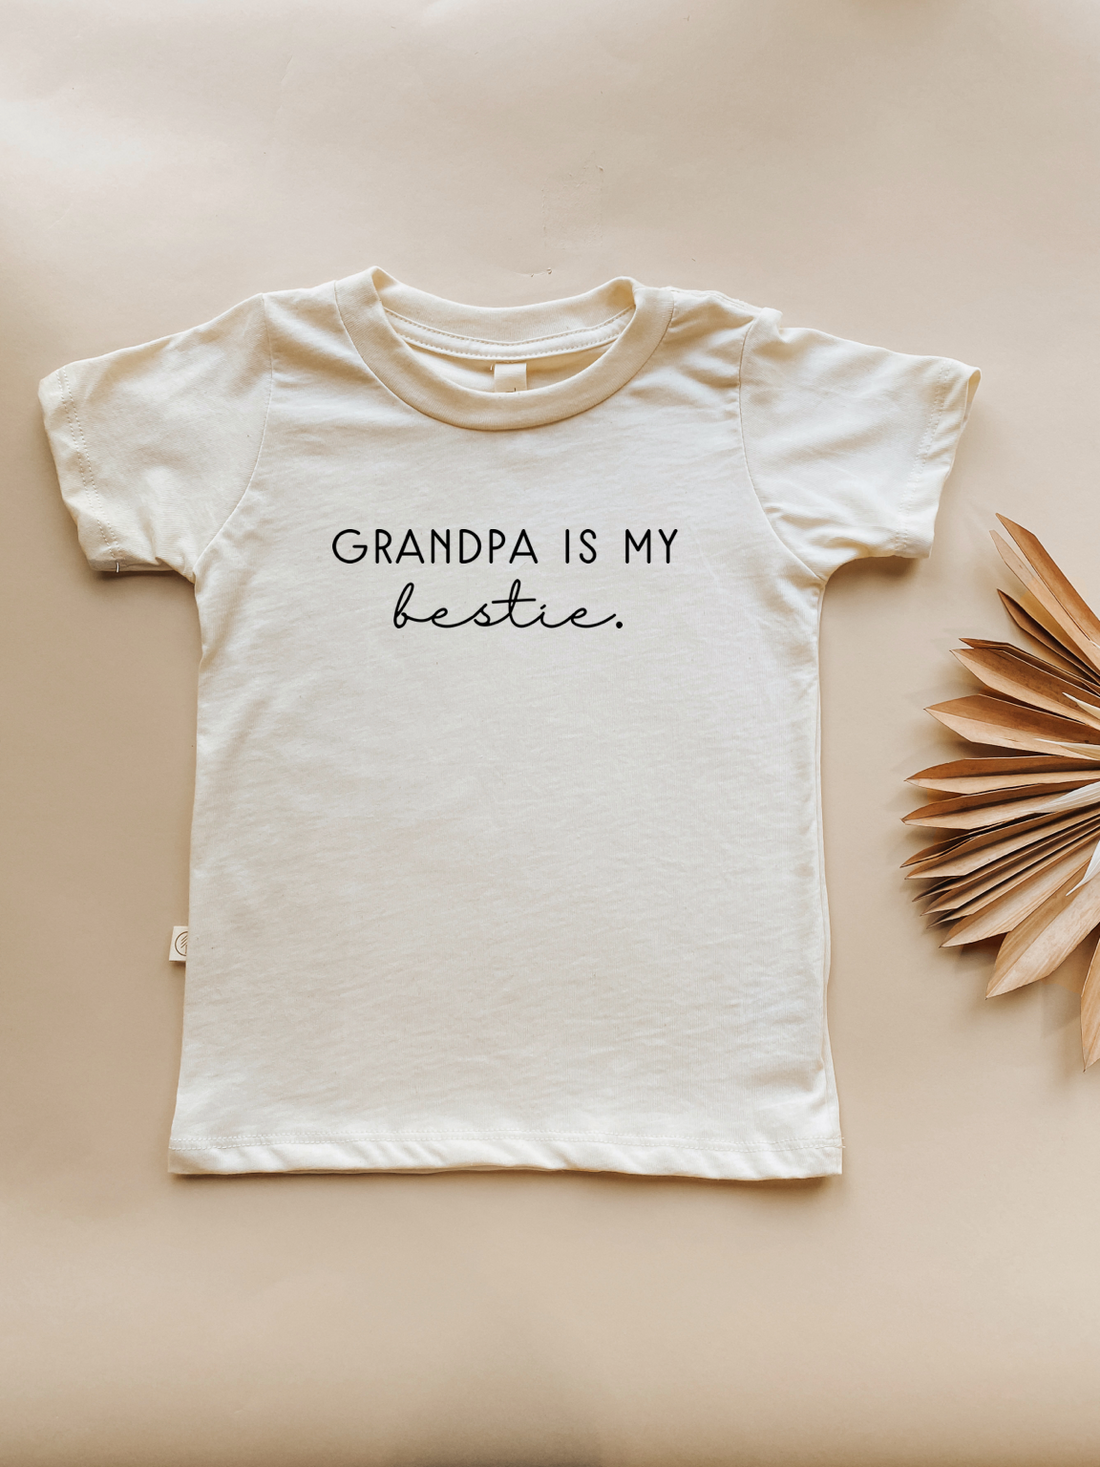 Grandpa is My Bestie - Organic Cotton Kids Graphic Tee